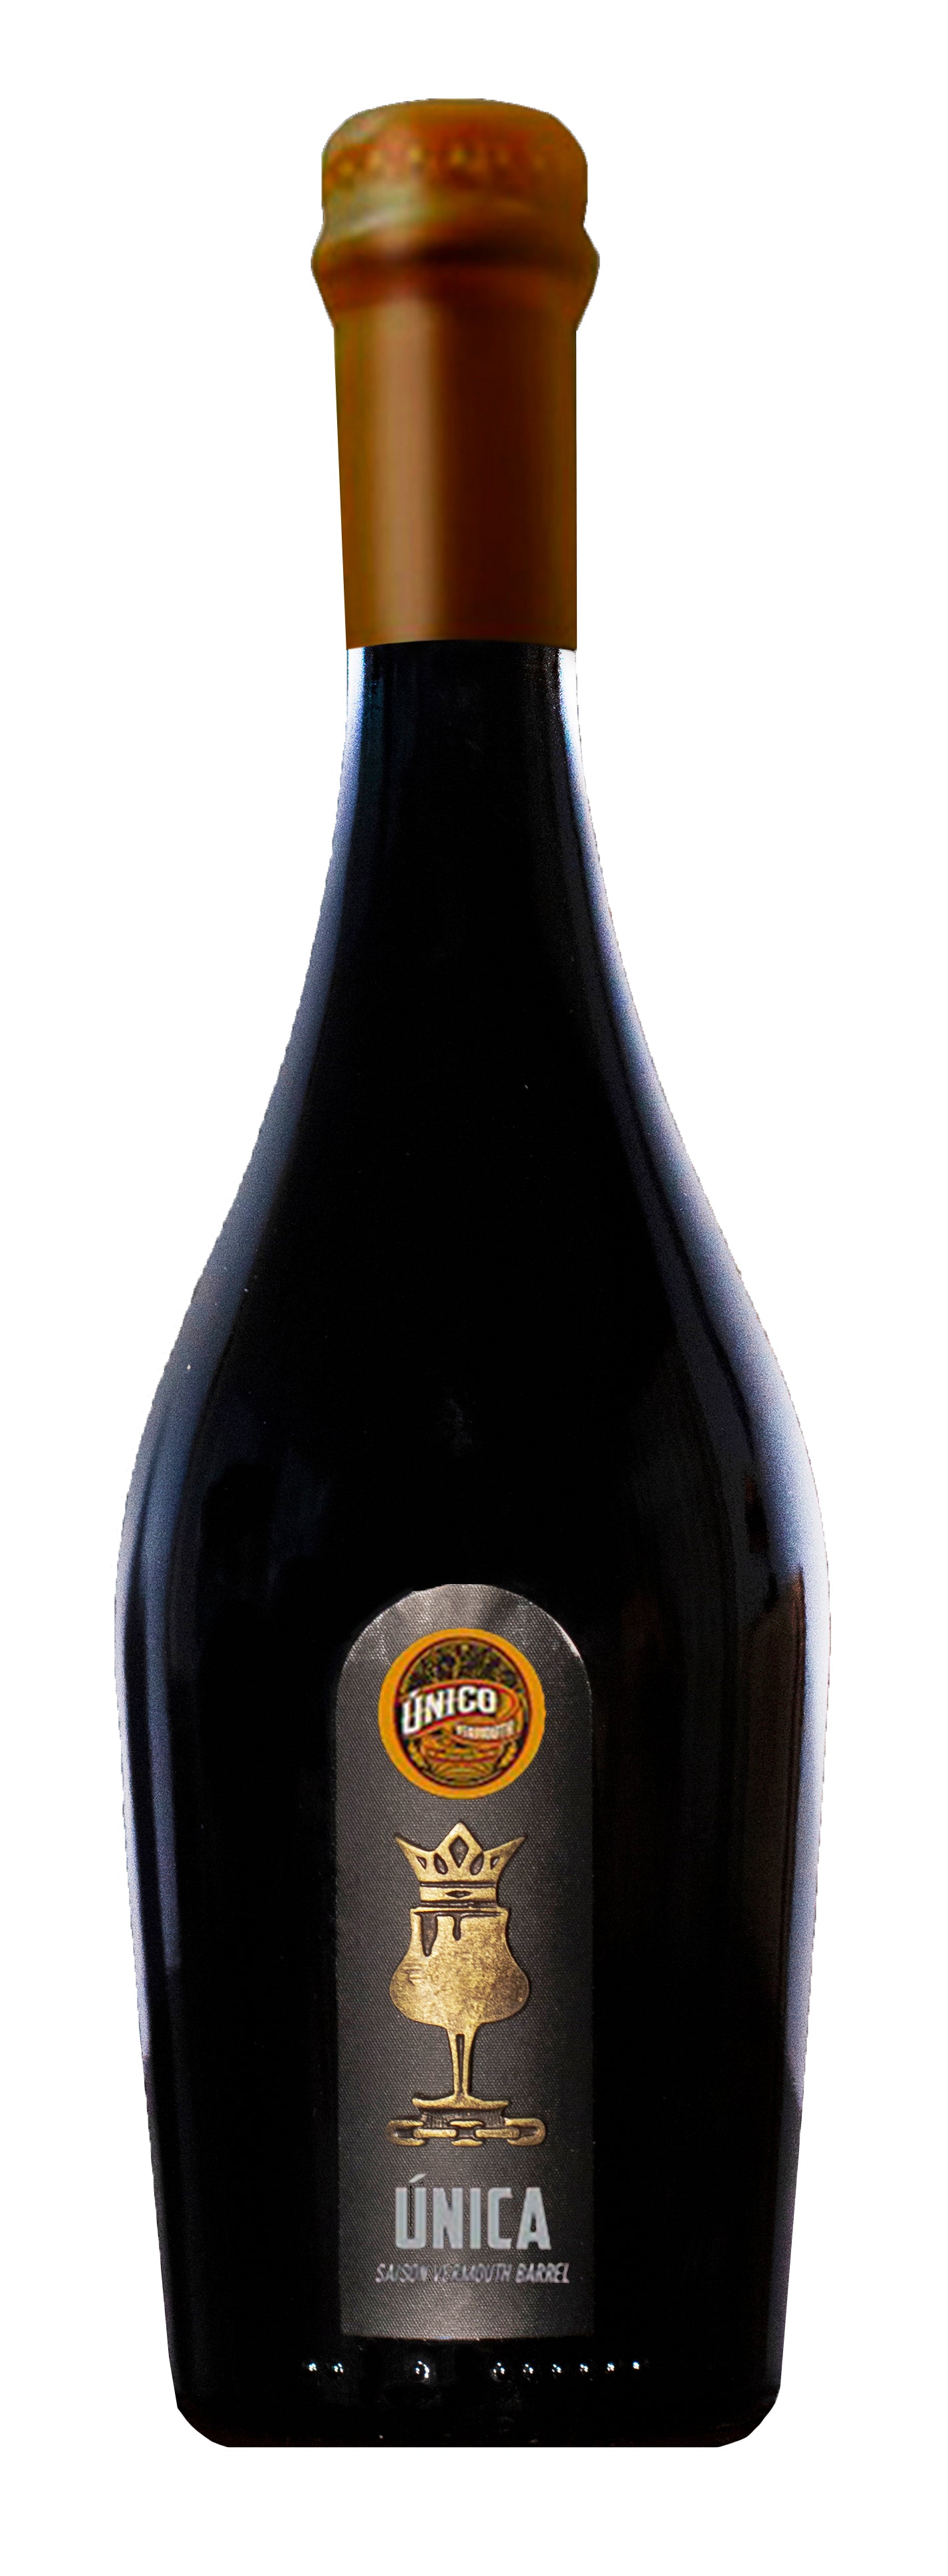 ÚNICA Saison vermouth barrel aged 7,5% - 18 meses barrica de vermouth Único - 75cl x 6